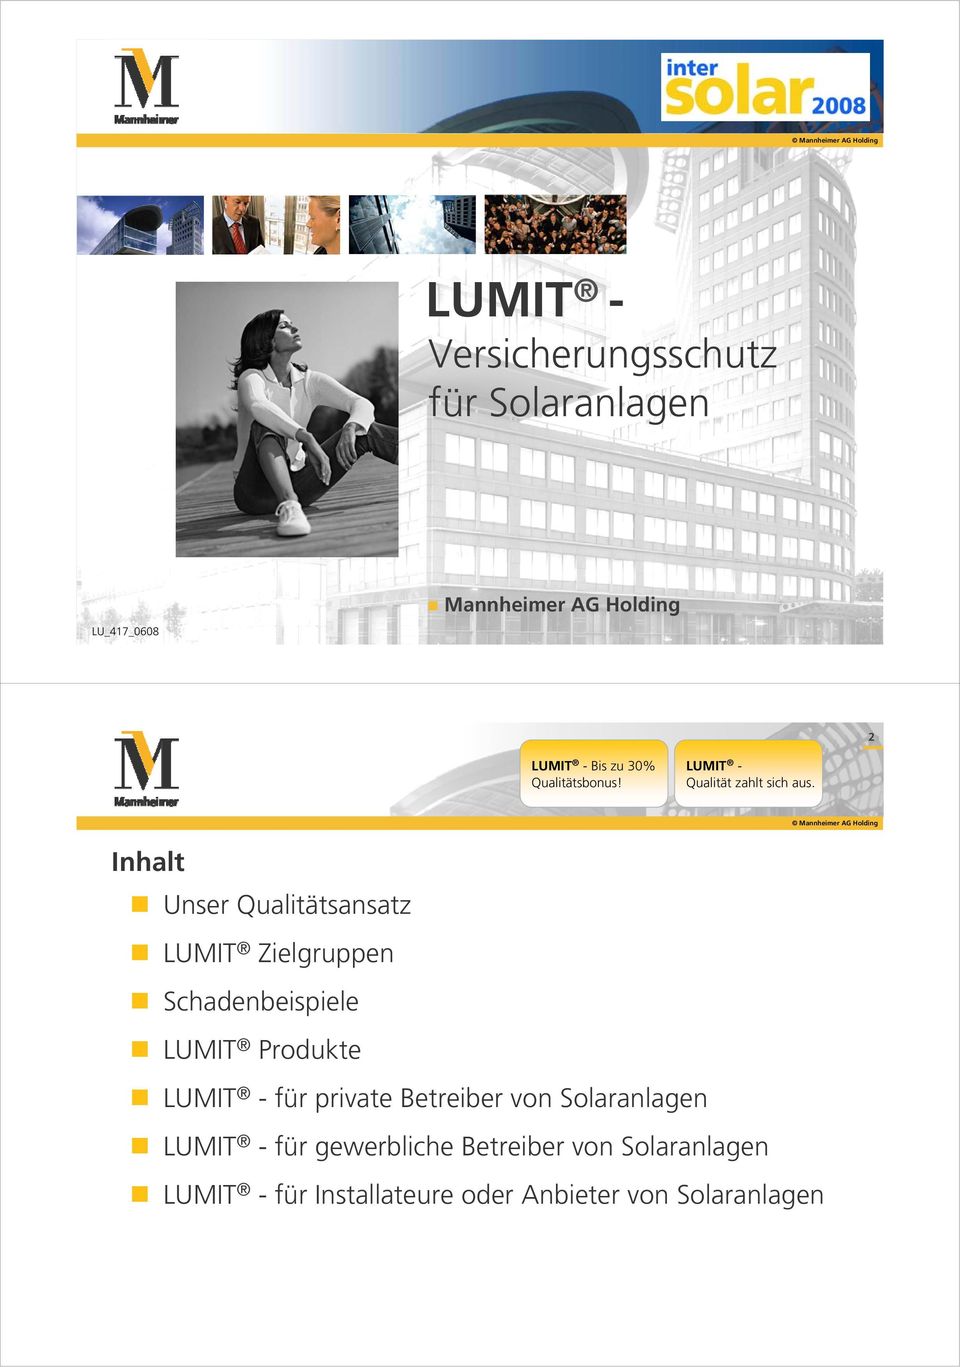 Schadenbeispiele LUMIT Produkte für private Betreiber von Solaranlagen